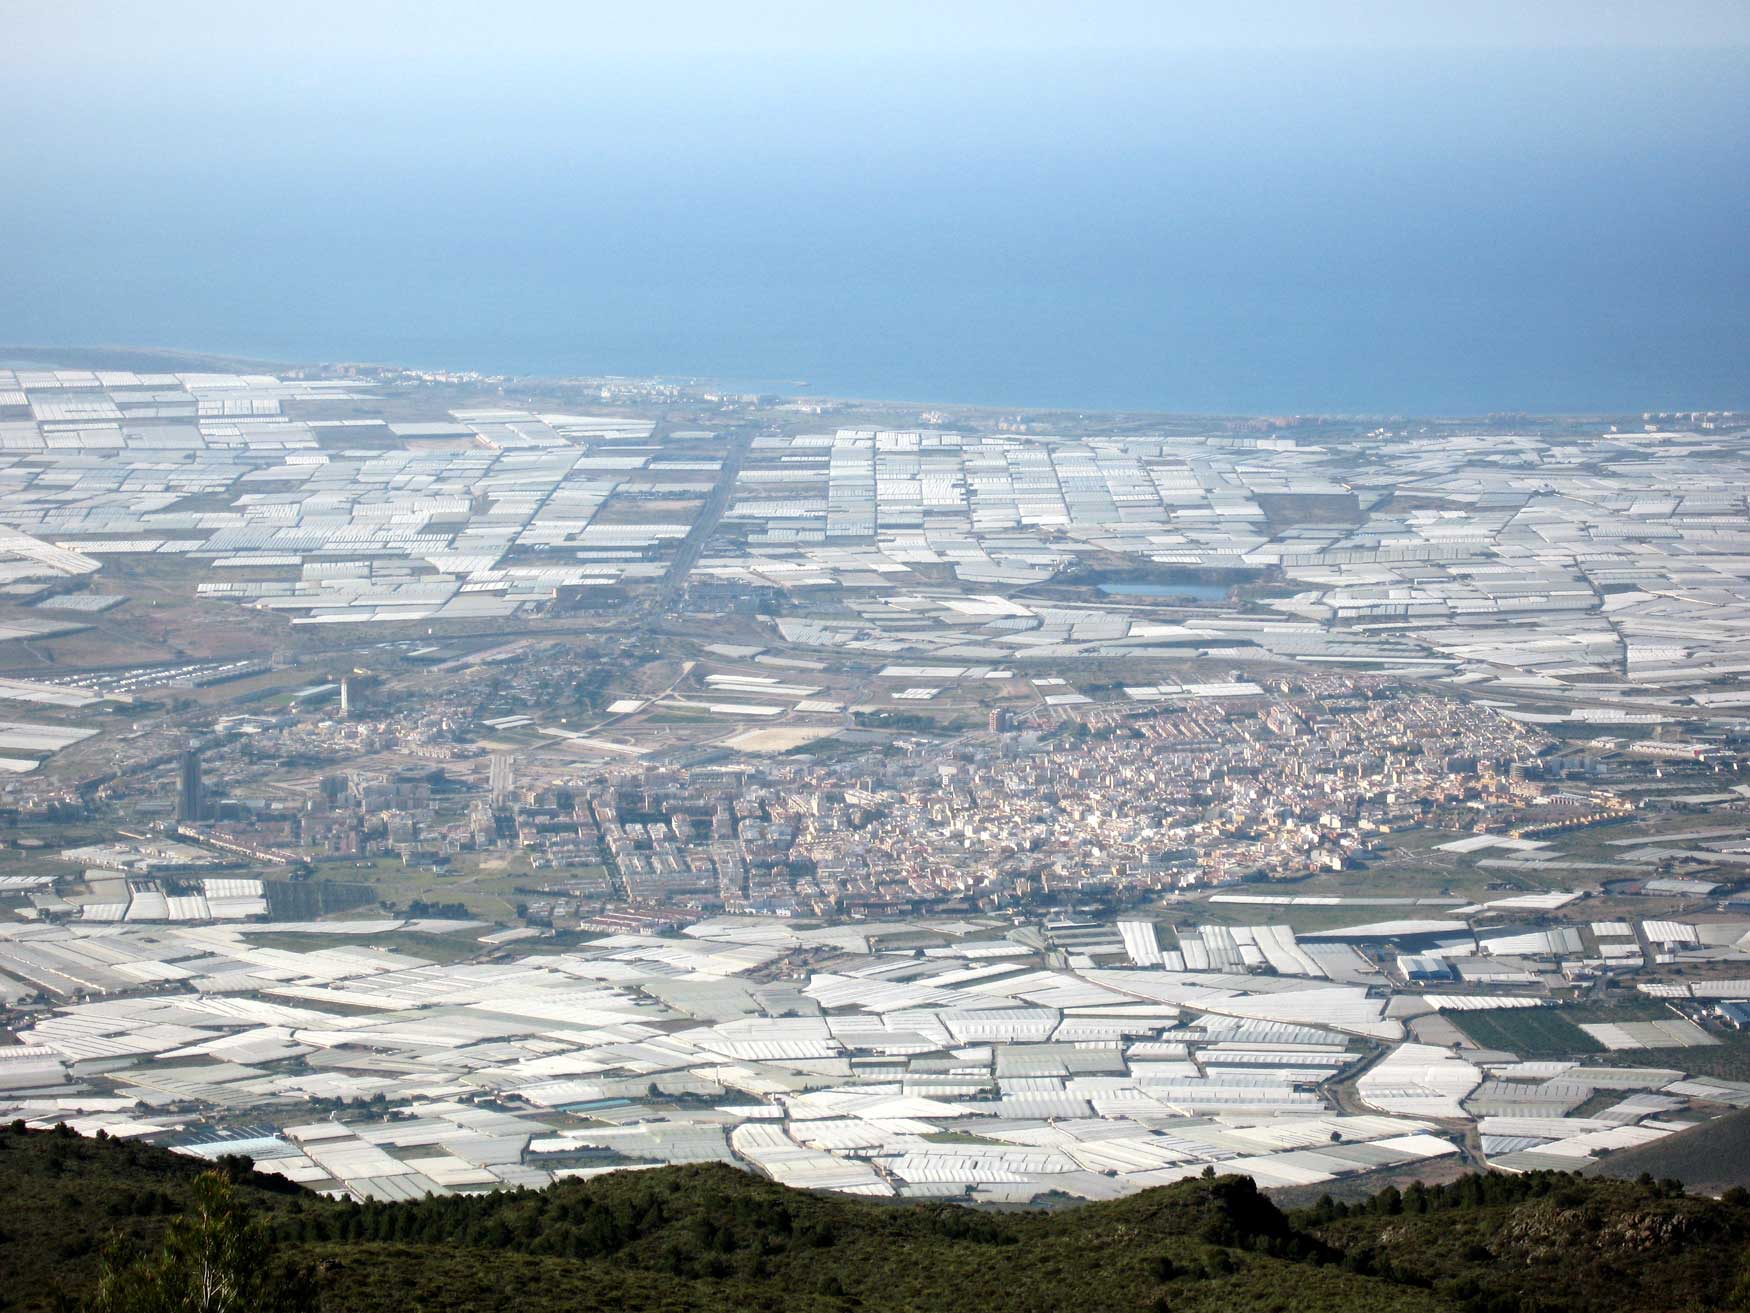 La combinación de suelo arenado e invernadero tipo Almería sigue siendo